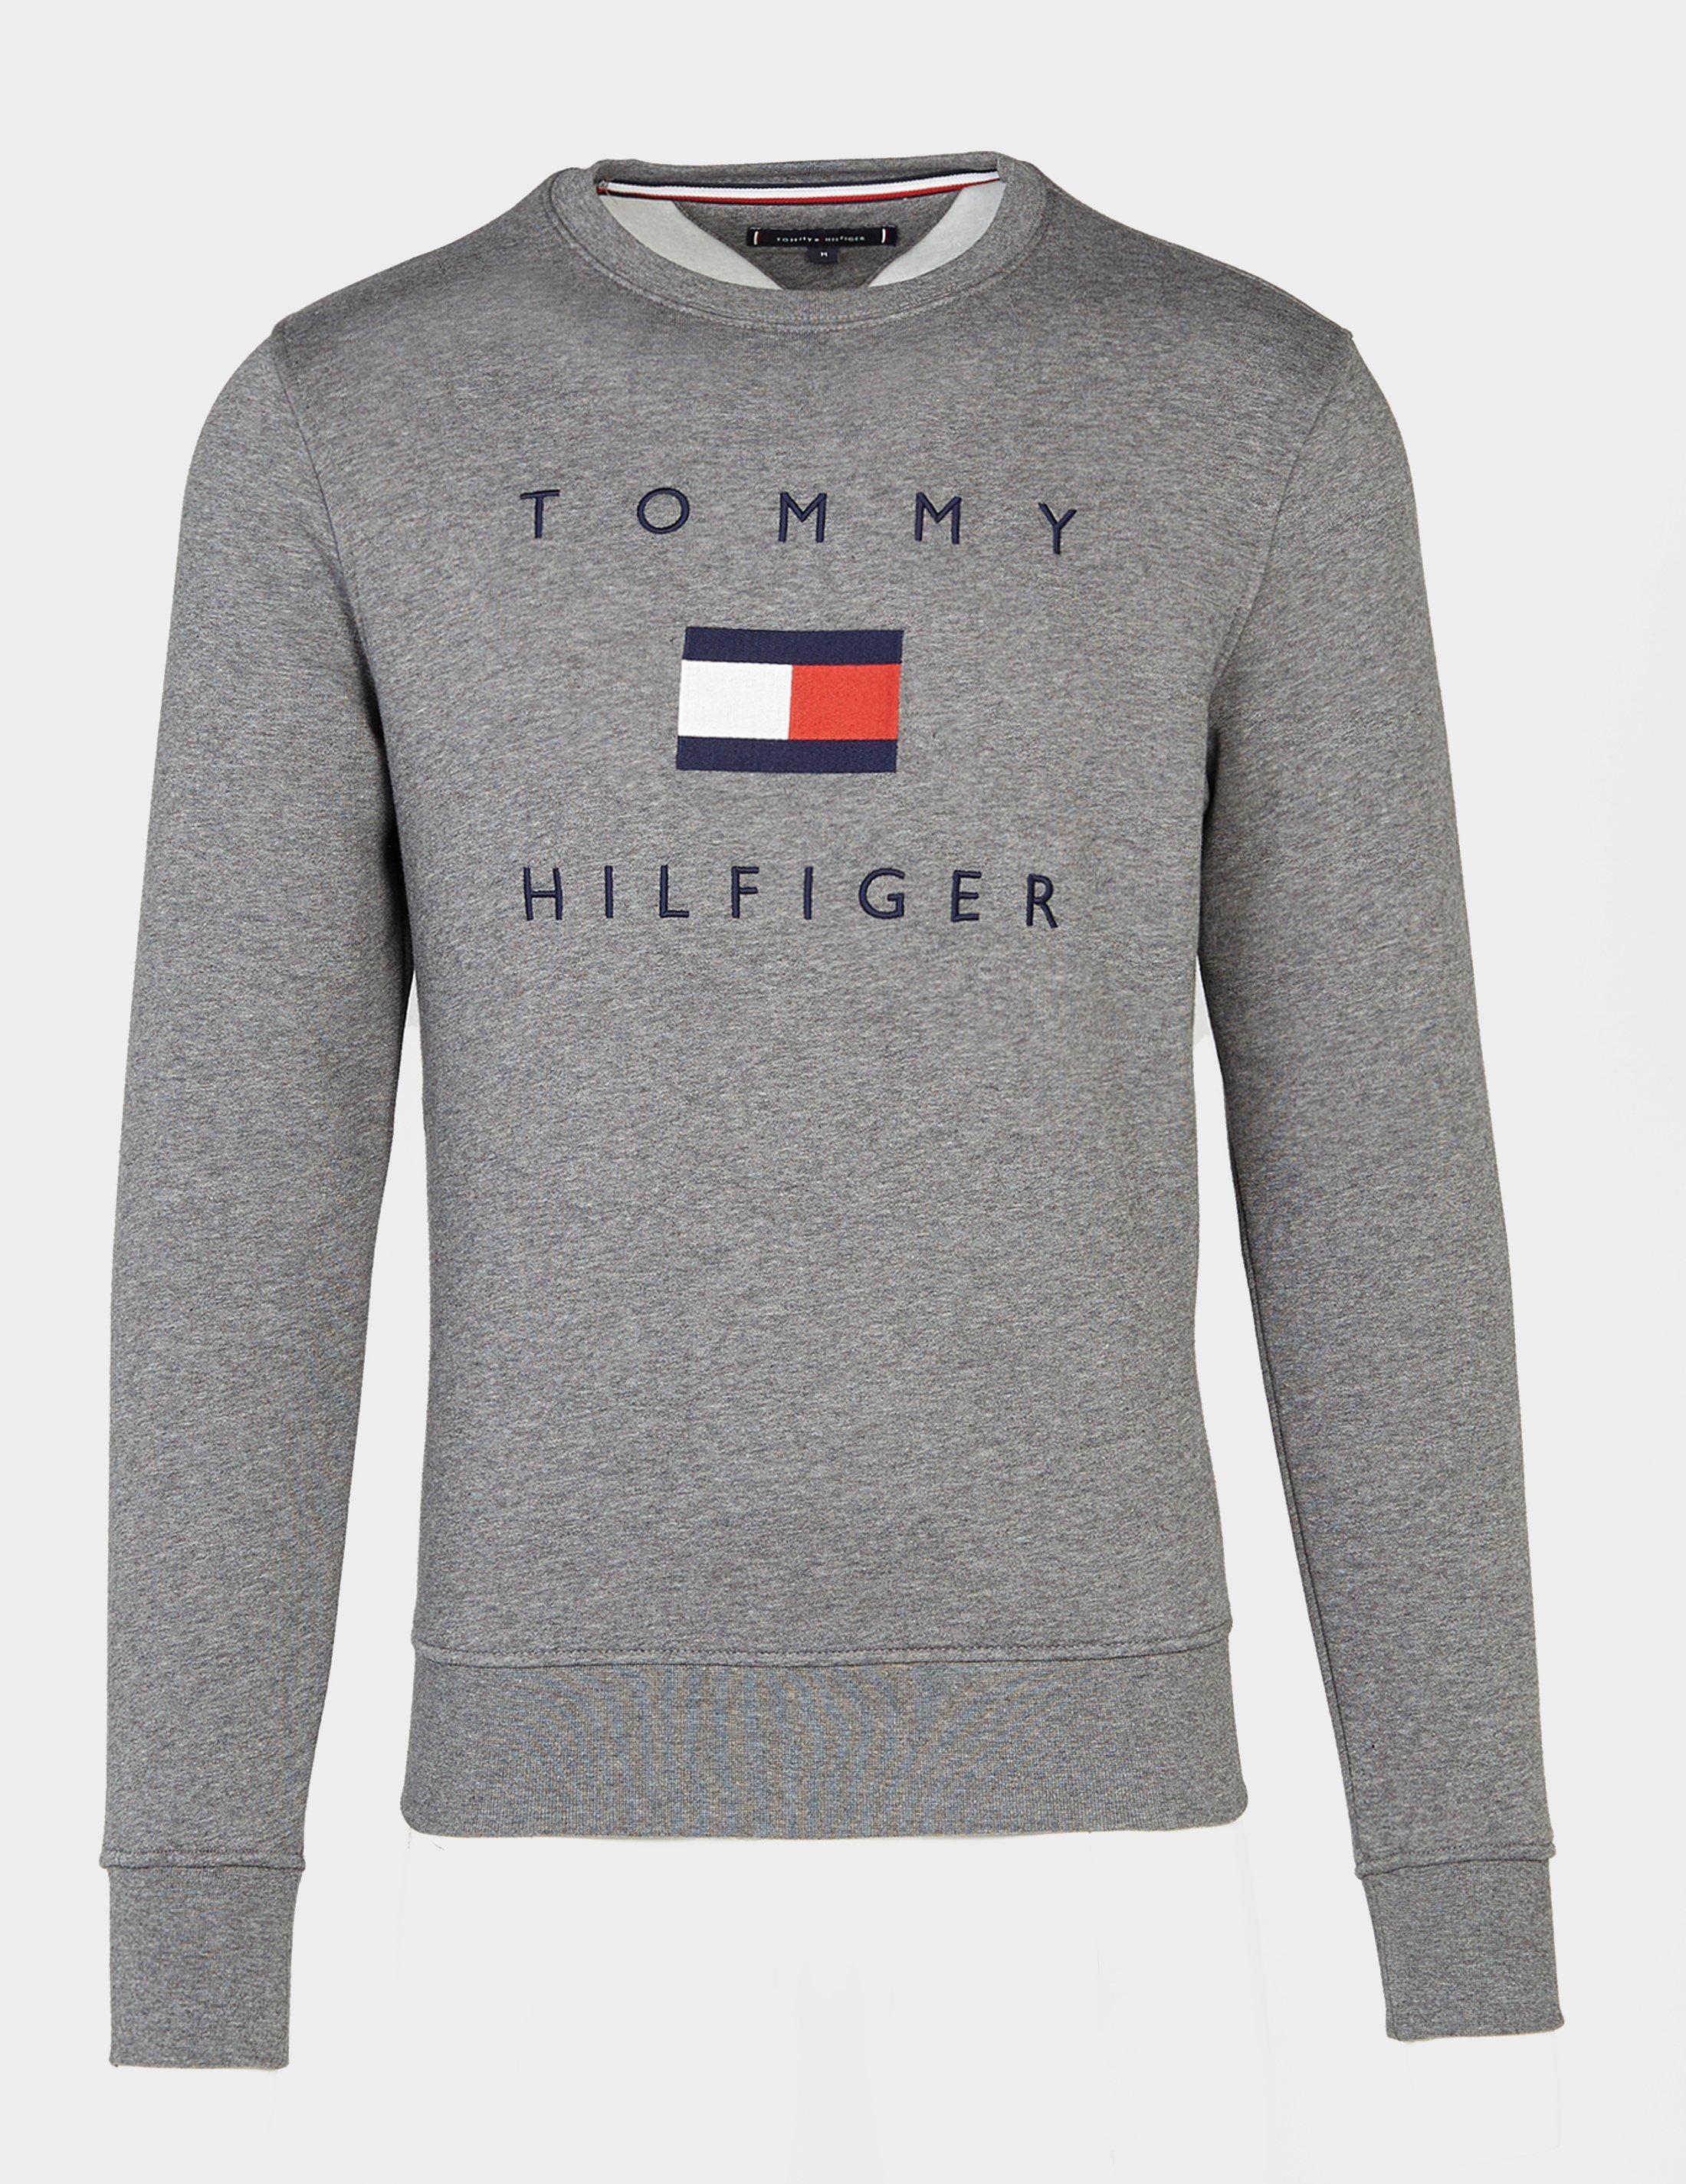 Tommy Hilfiger Flag Crew Sweatshirt Grey/grey in Gray for Men - Lyst